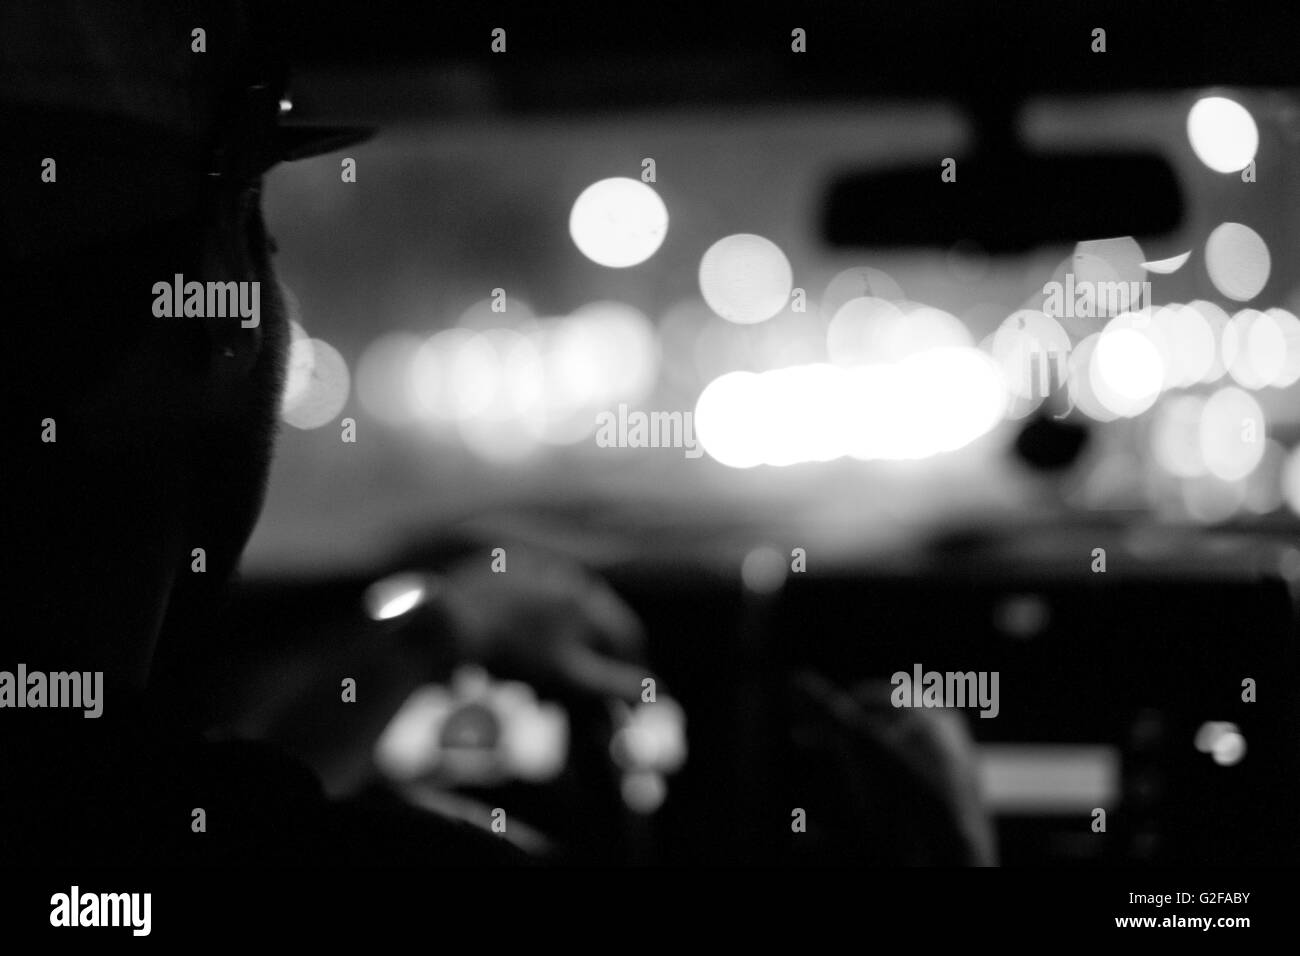 Man Driving Car at Night, Close-Up, Rear View Stock Photo